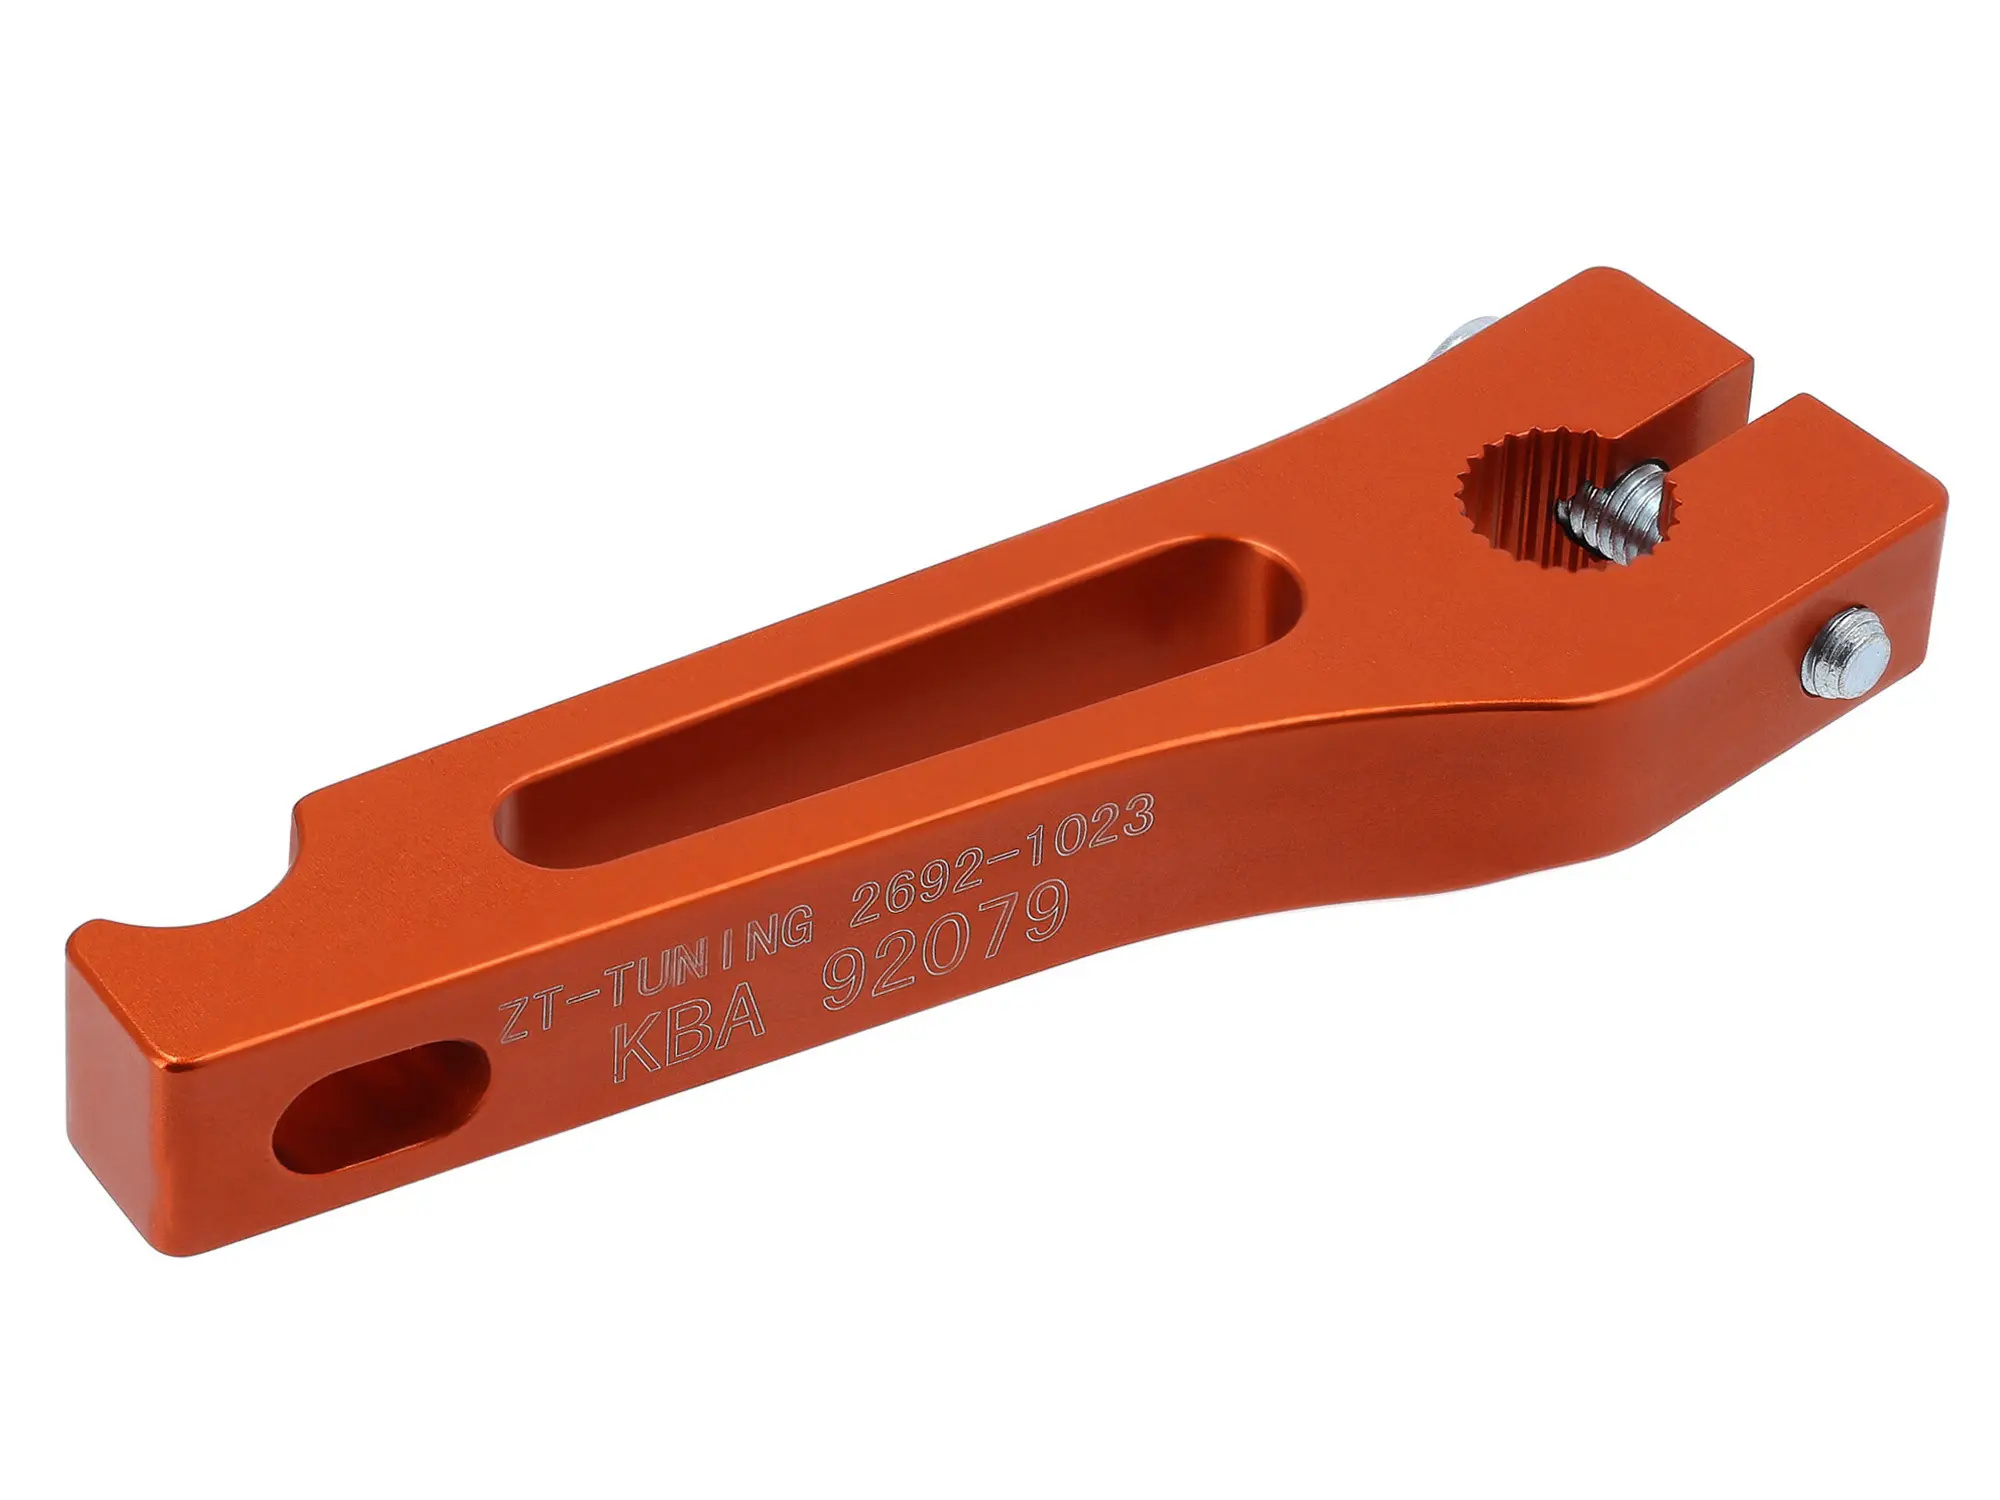 ZT-Tuning CNC Bremshebel hinten mit ABE, Orange - für S50, S51, S70, KR51/1, KR51/2, SR50, SR80, SR4-1, SR4-2, SR4-3, SR4-4, Item no: 10077916 - Image 1